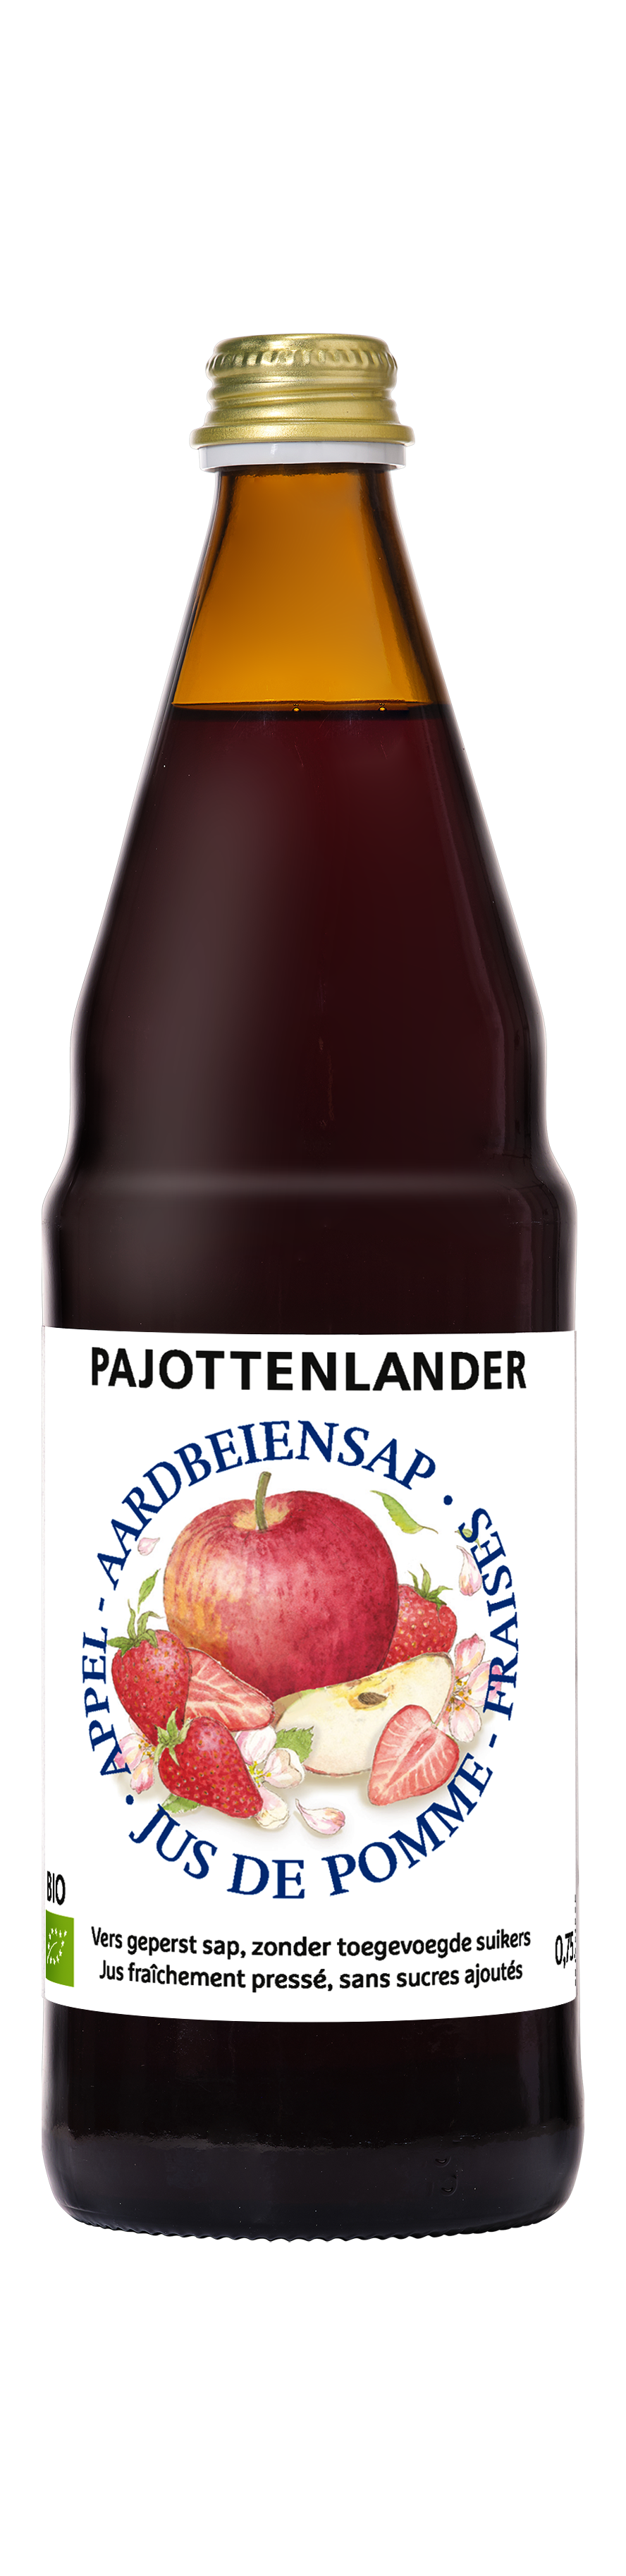 Pajottenlander Appel-aardbeisap bio 0,75L